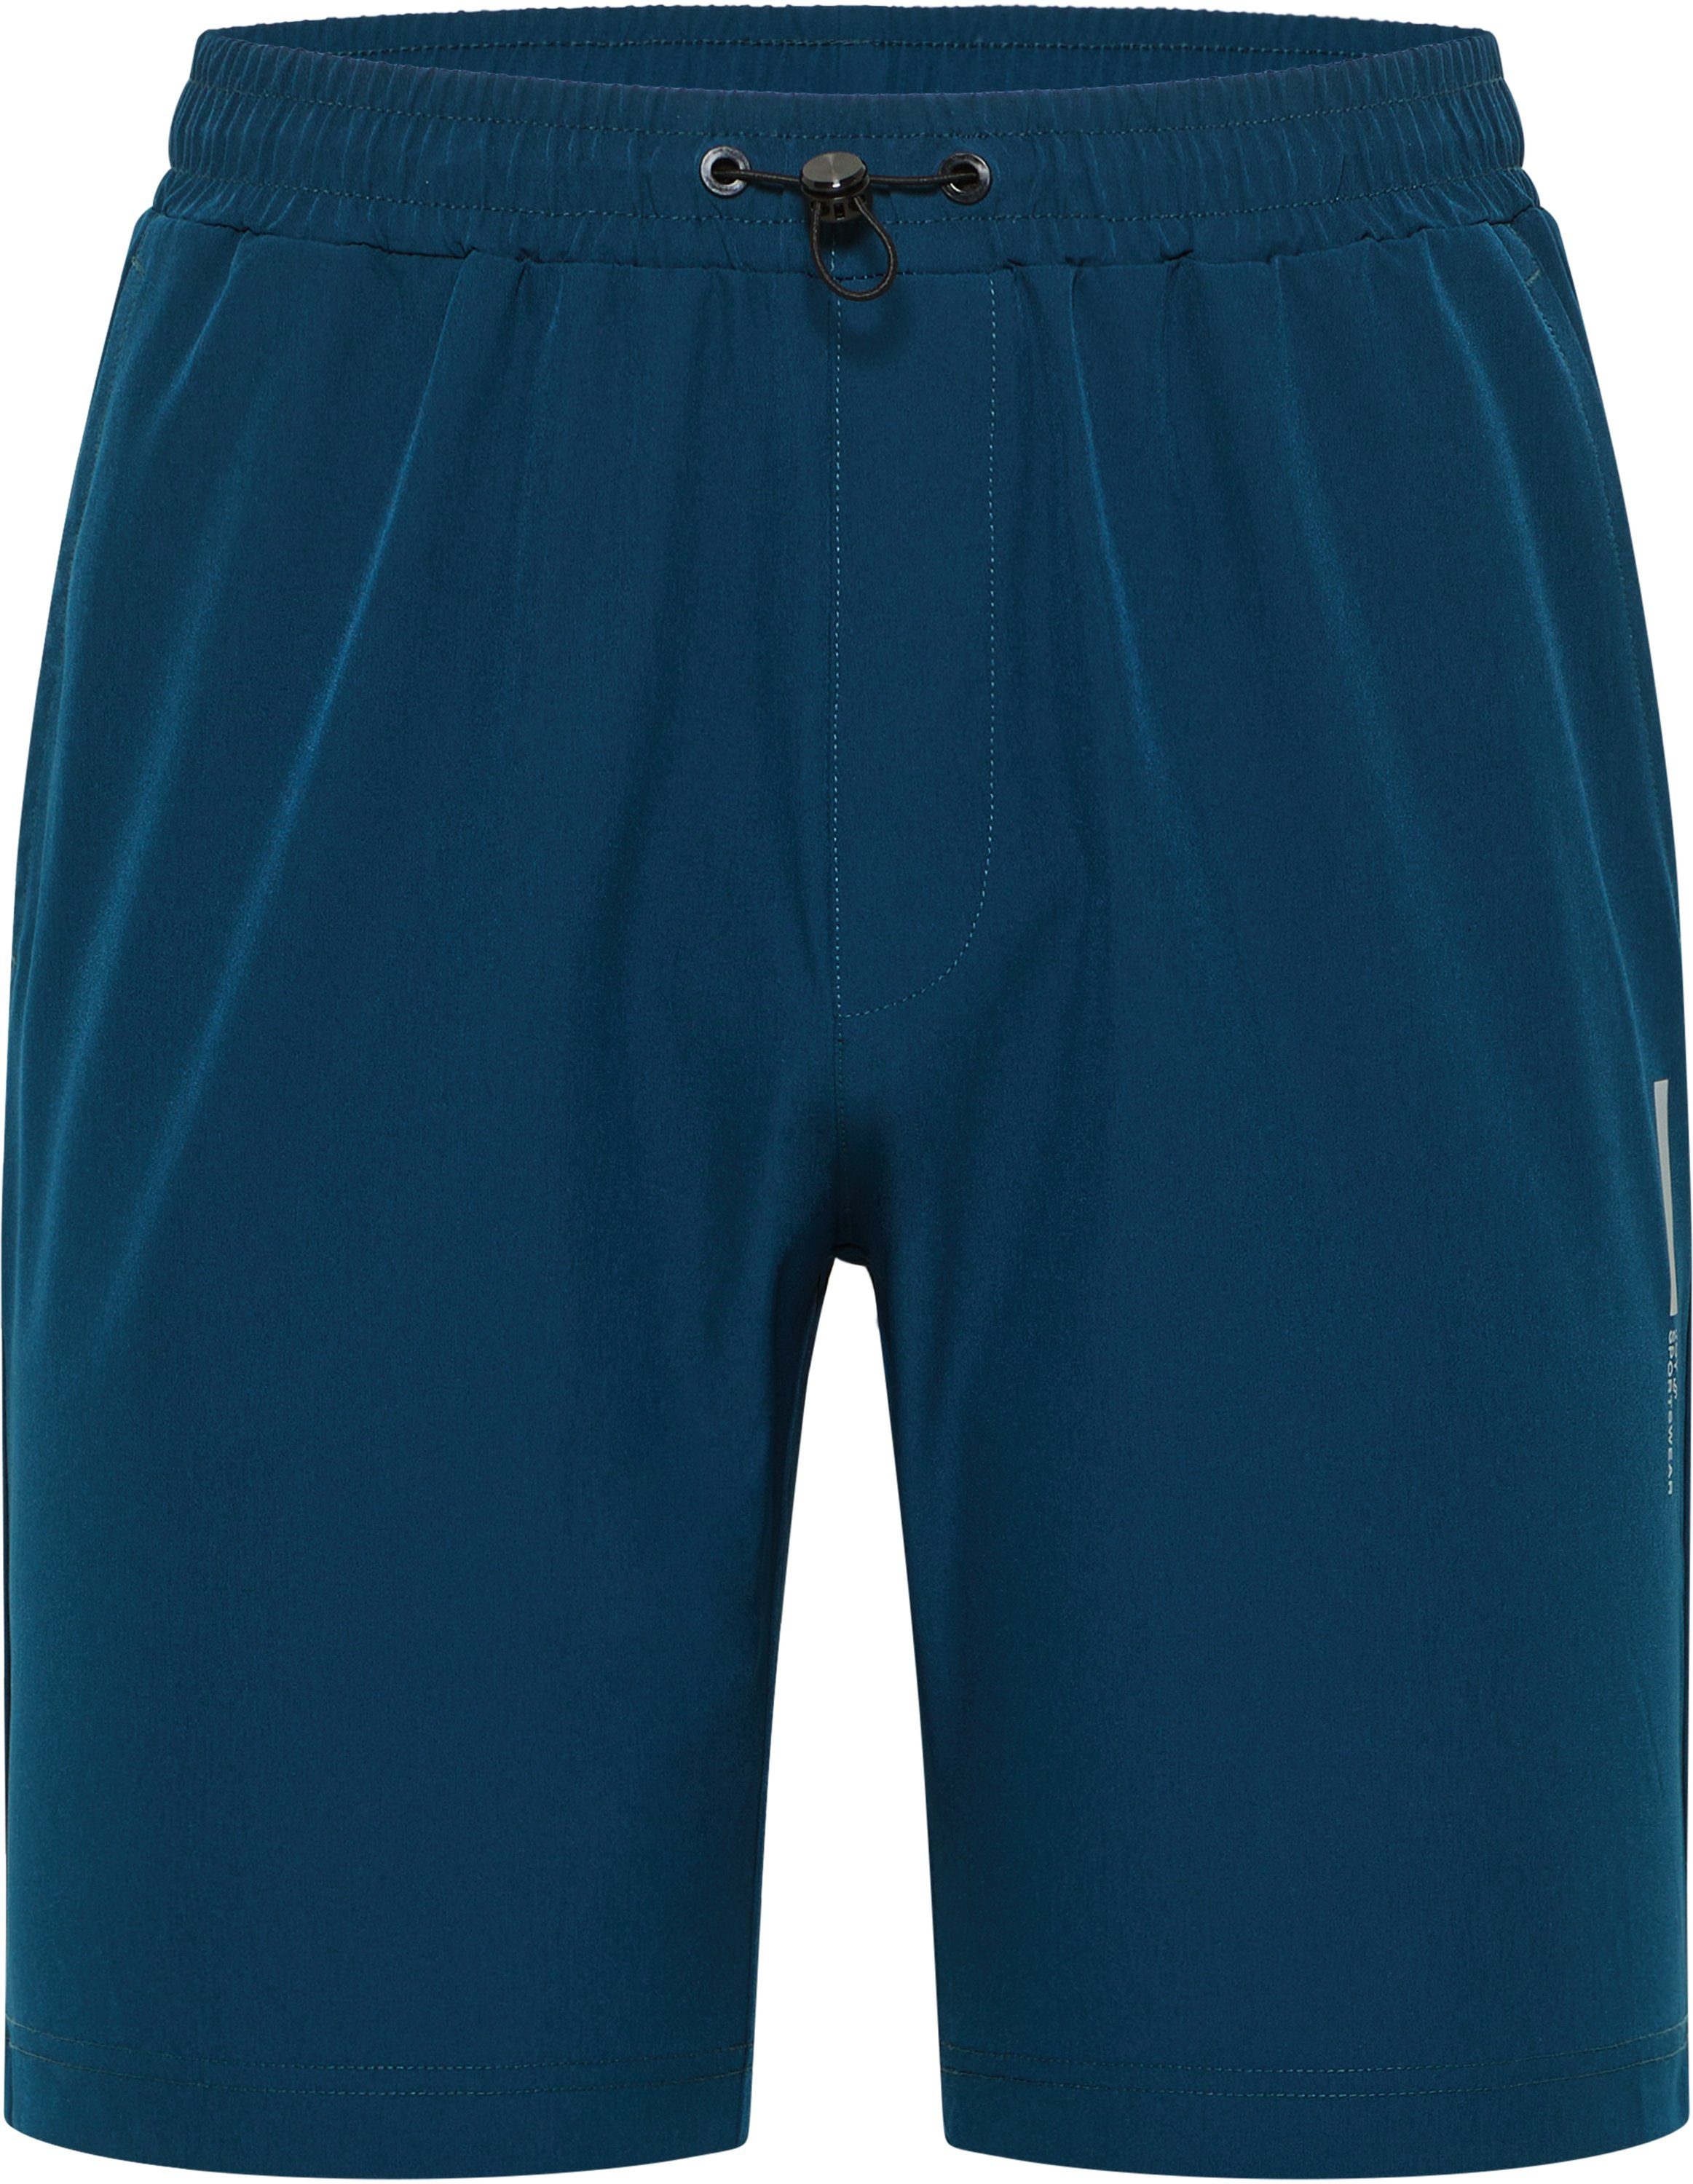 Hose Joy Kurze Sportswear MAREK space Trainingsshorts blue